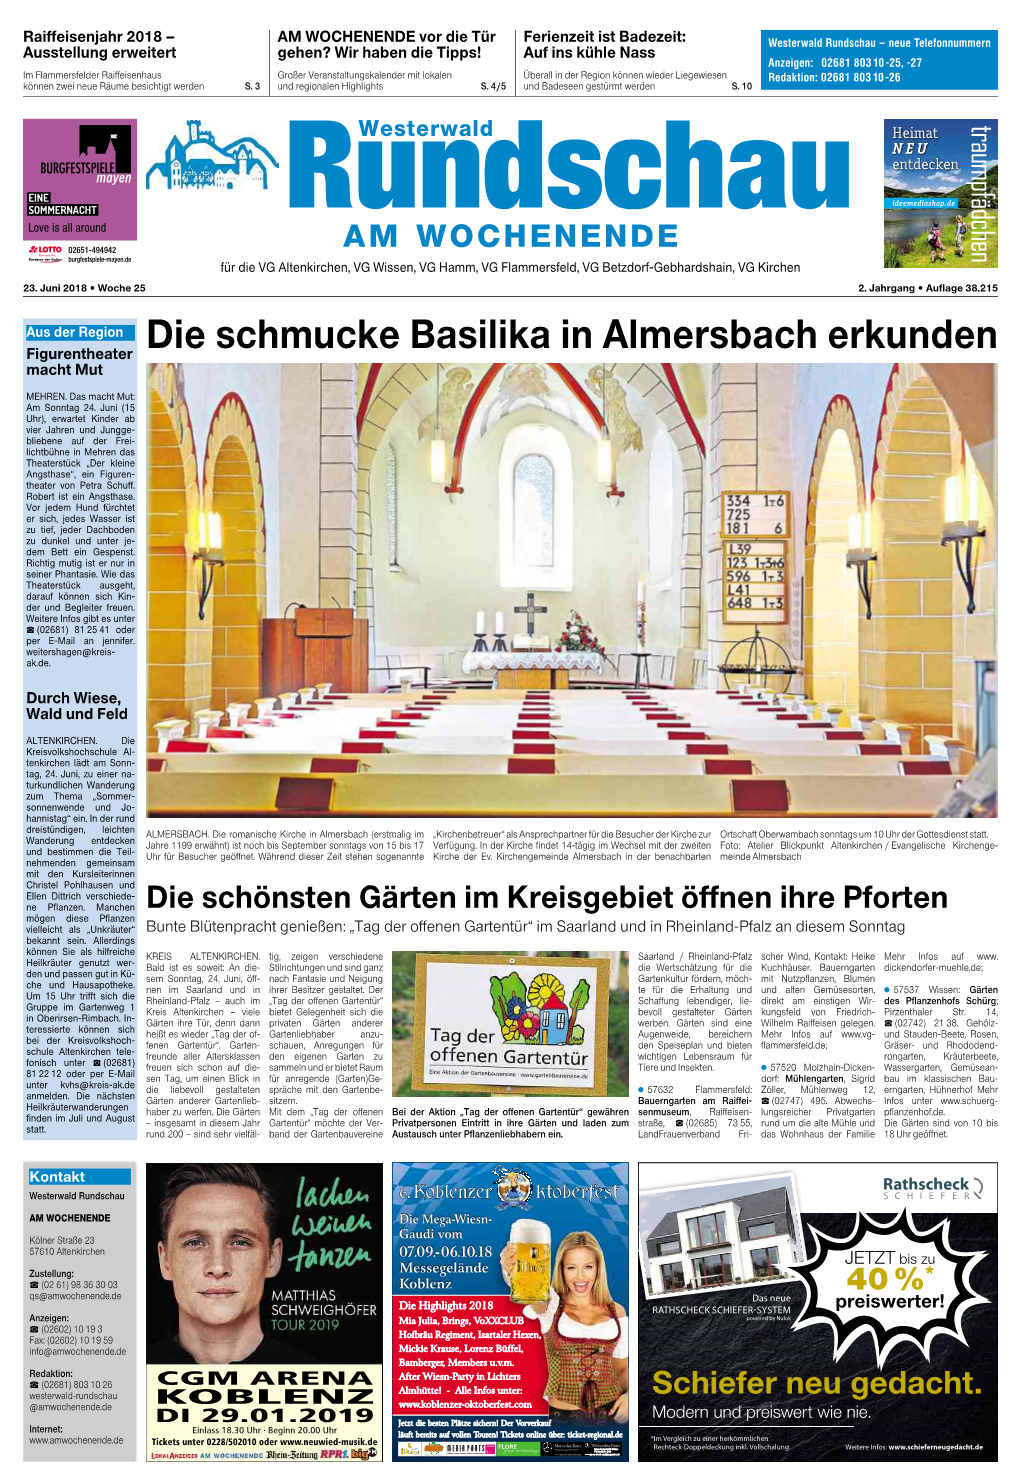 Die Schmucke Basilika in Almersbach Erkunden Macht Mut